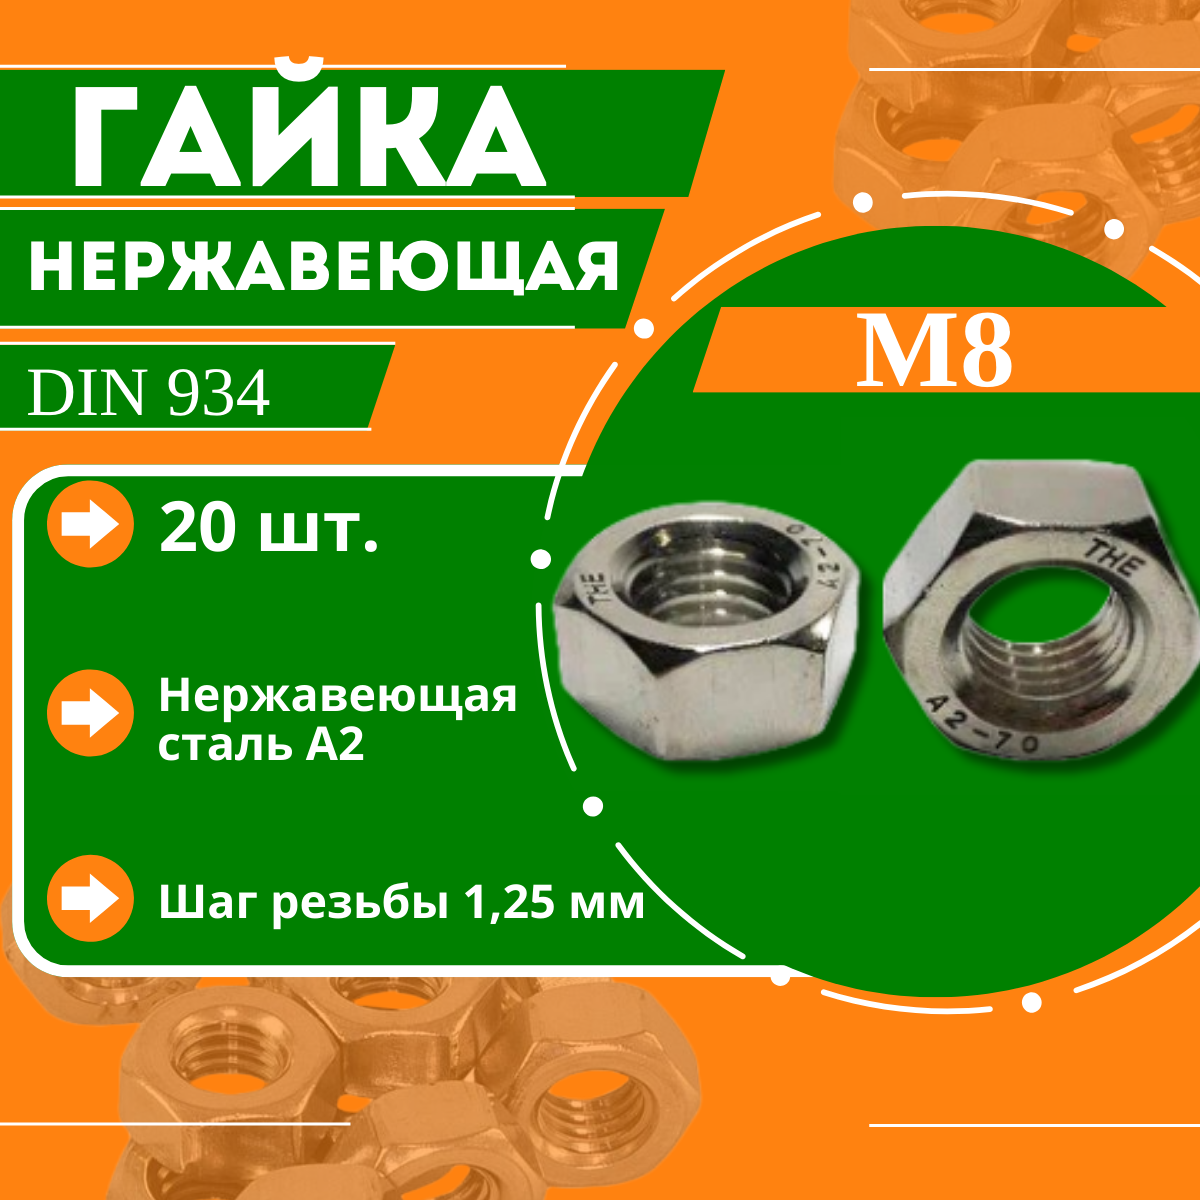 Гайка нержавеющая DIN 934 (A2) - M8 (20 шт.)